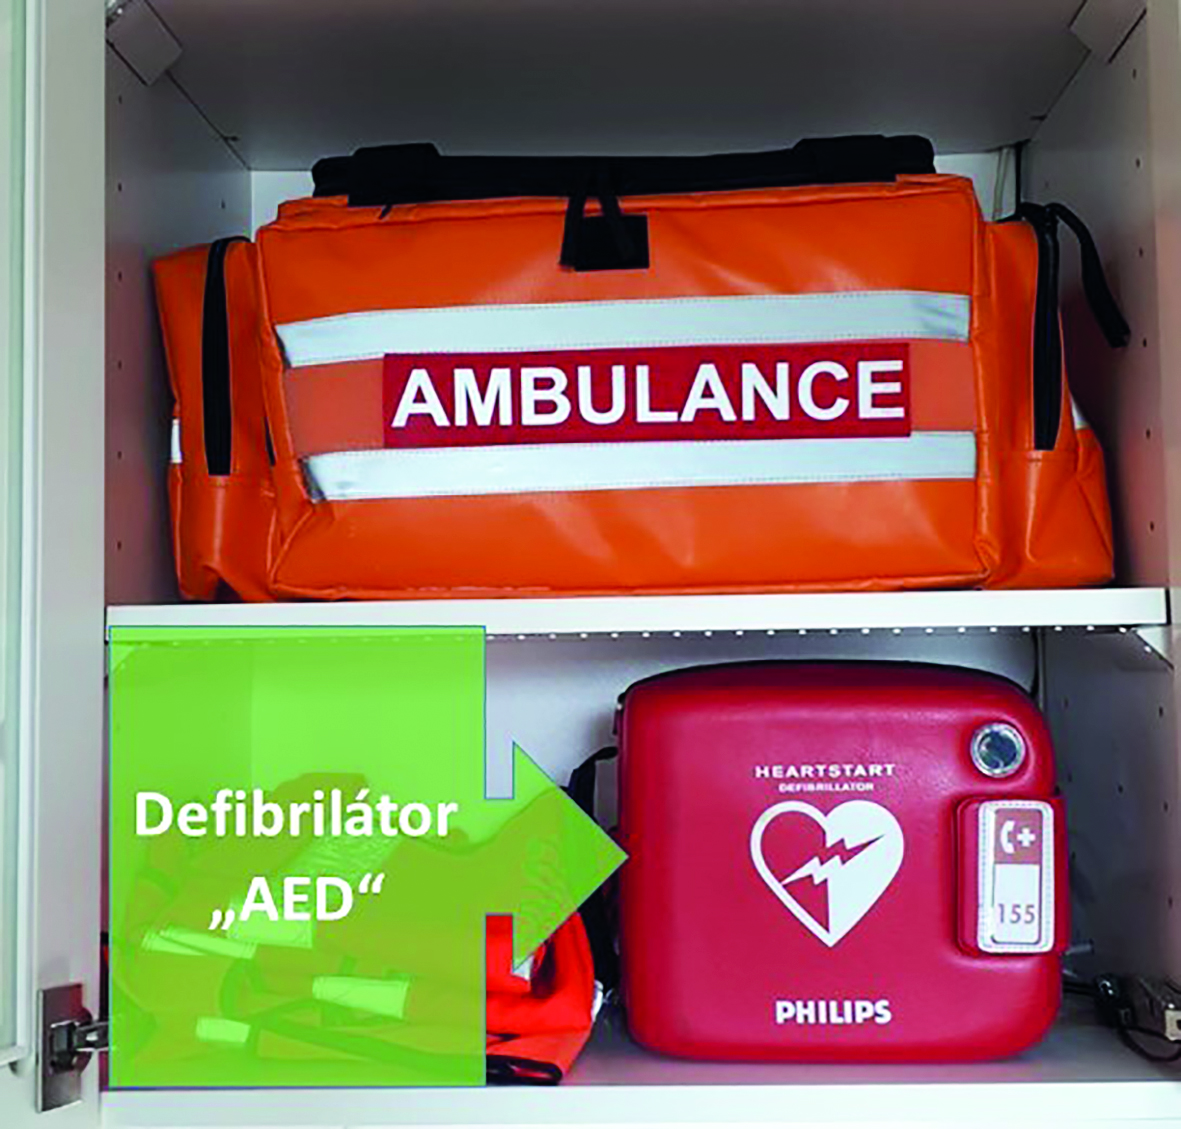 Obr. 4 Umístění defibrilátoru a zdravotnické tašky ve skříňce